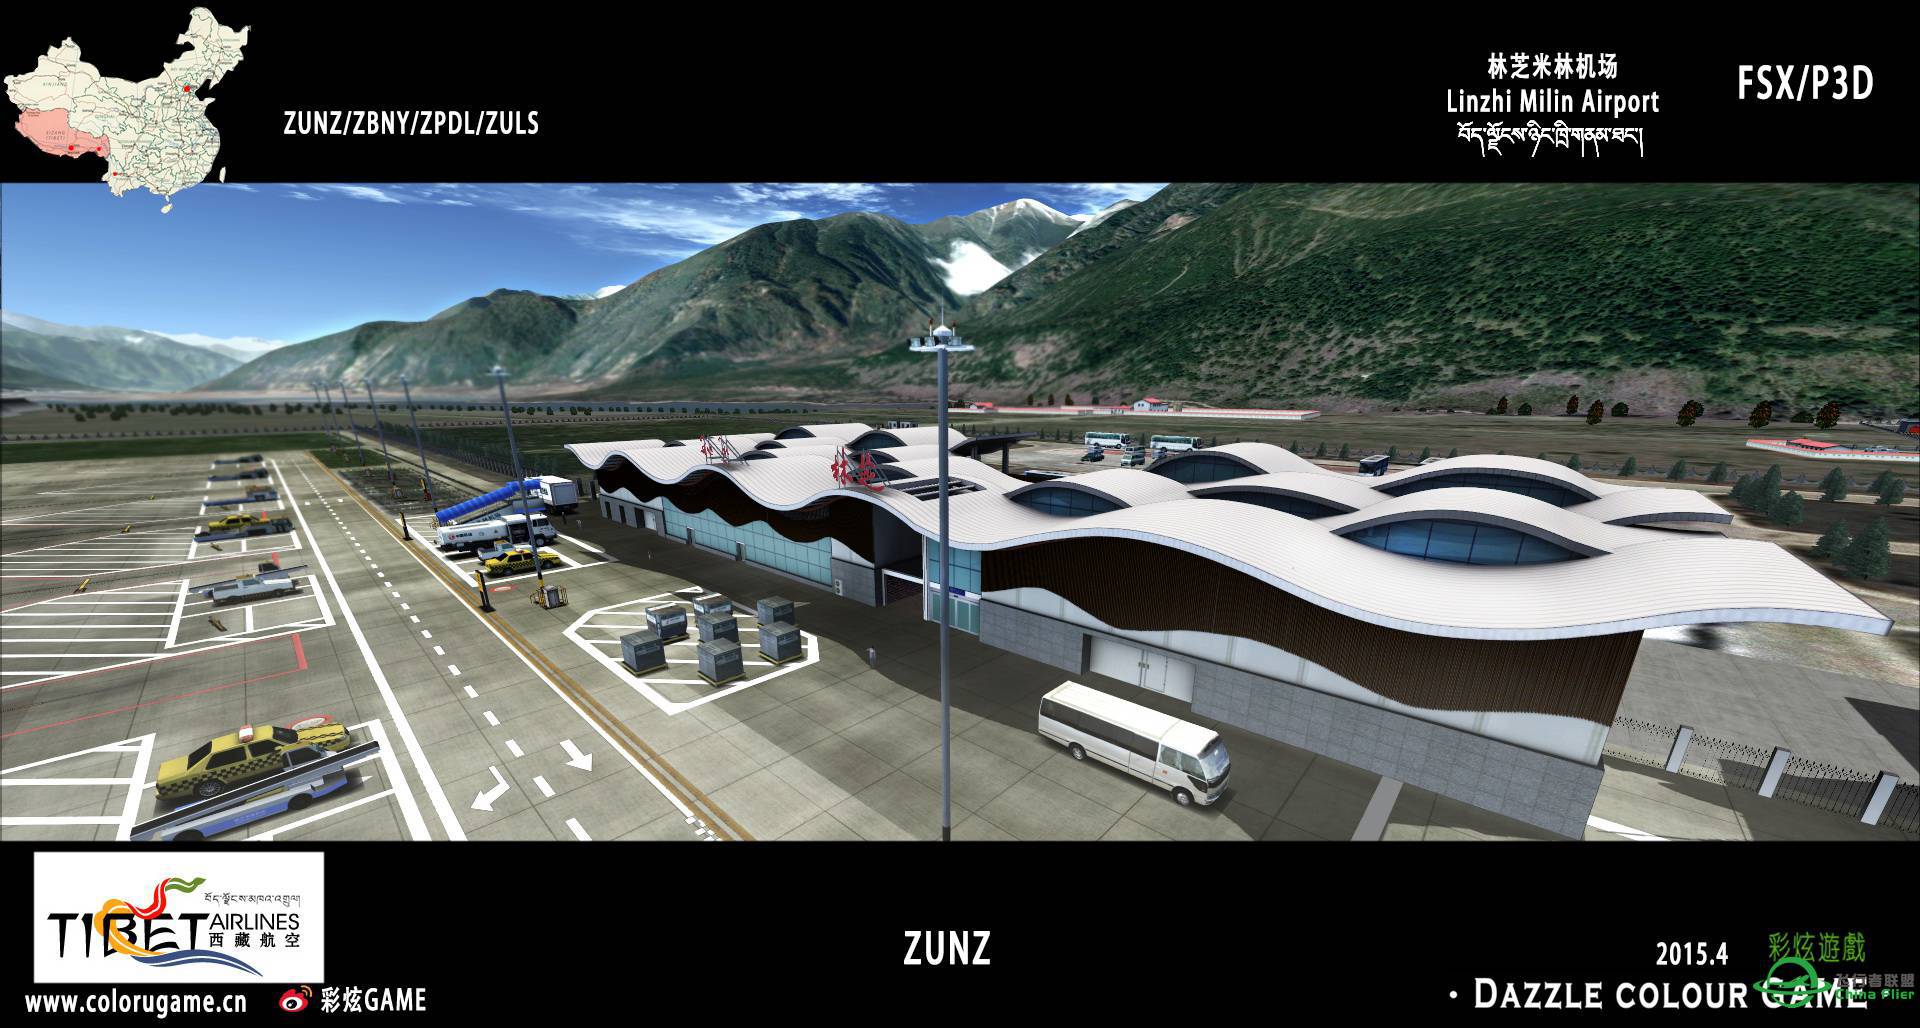 彩炫地景：林芝米林机场（ZUNZ）正式发布！-5632 